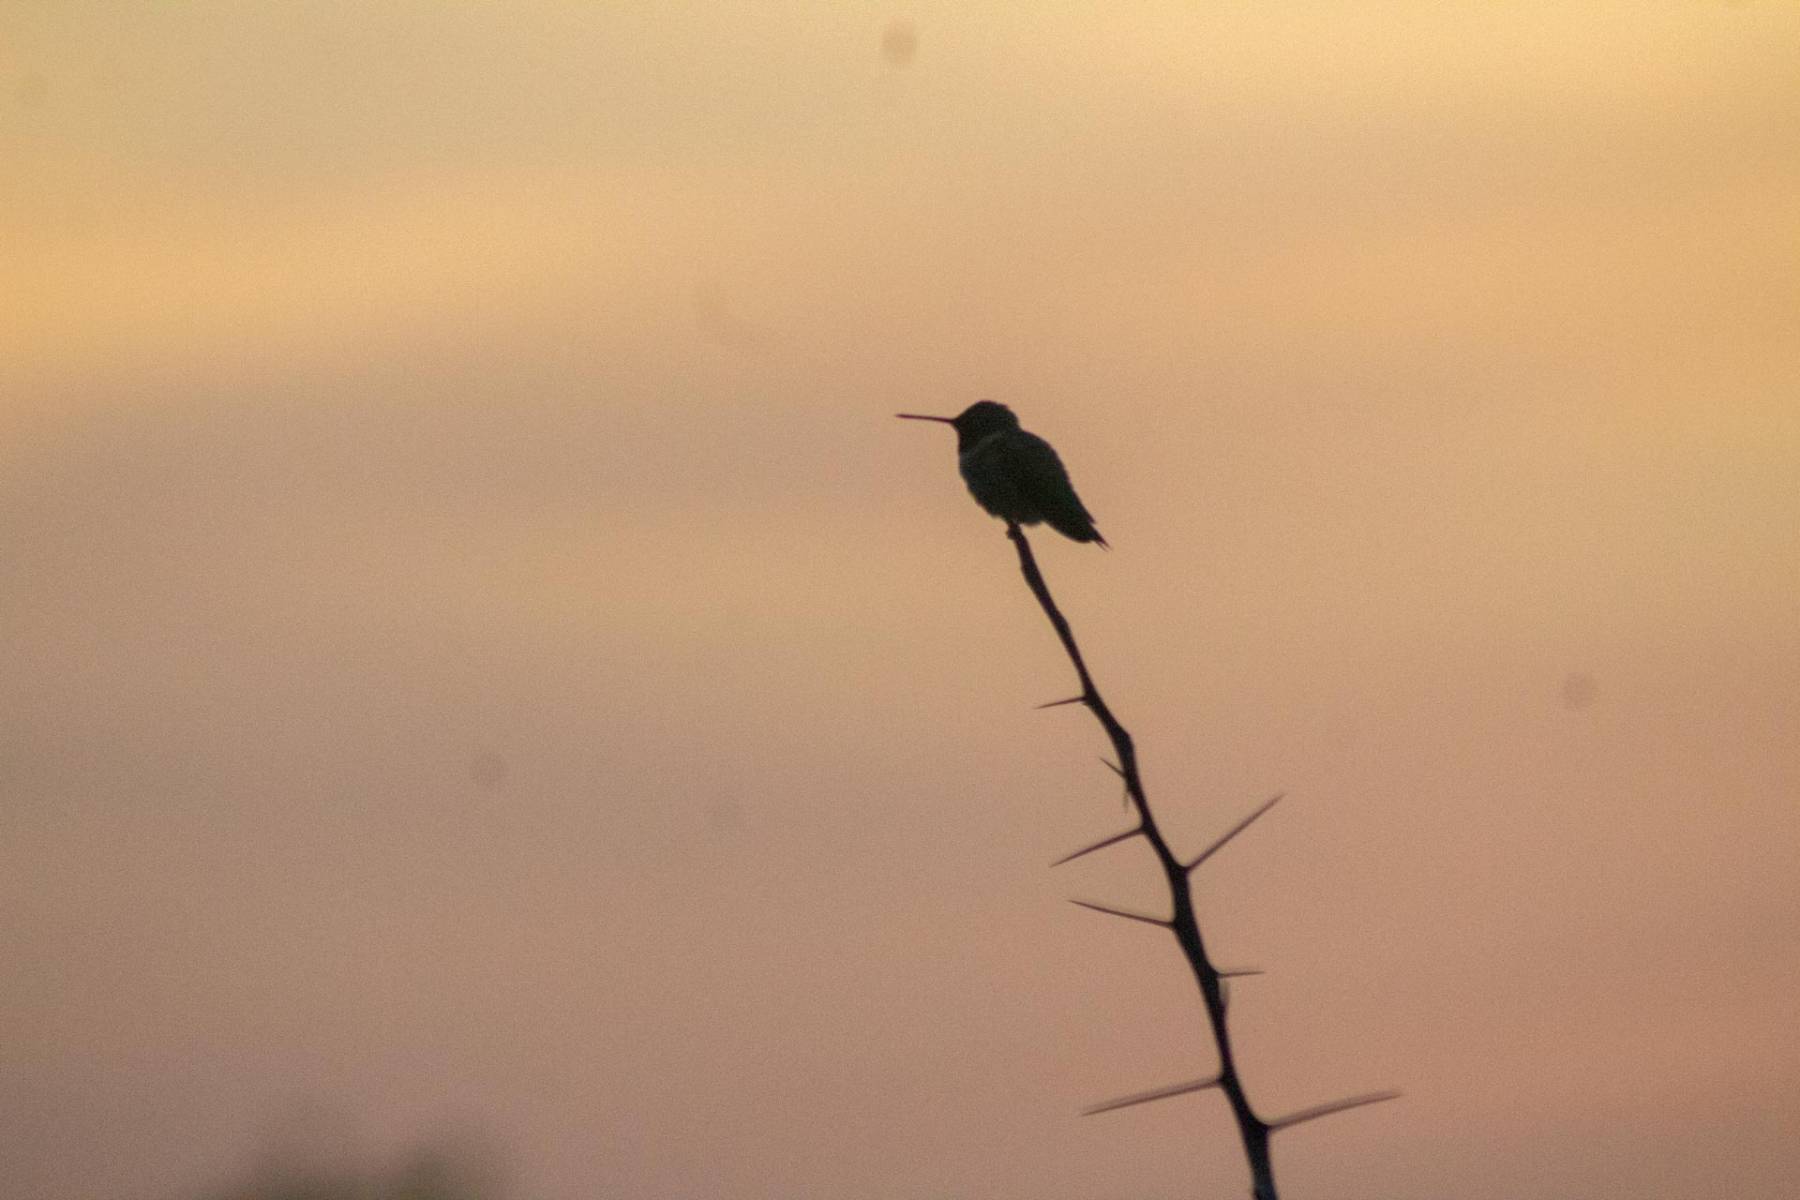 Hummingbird at sunset